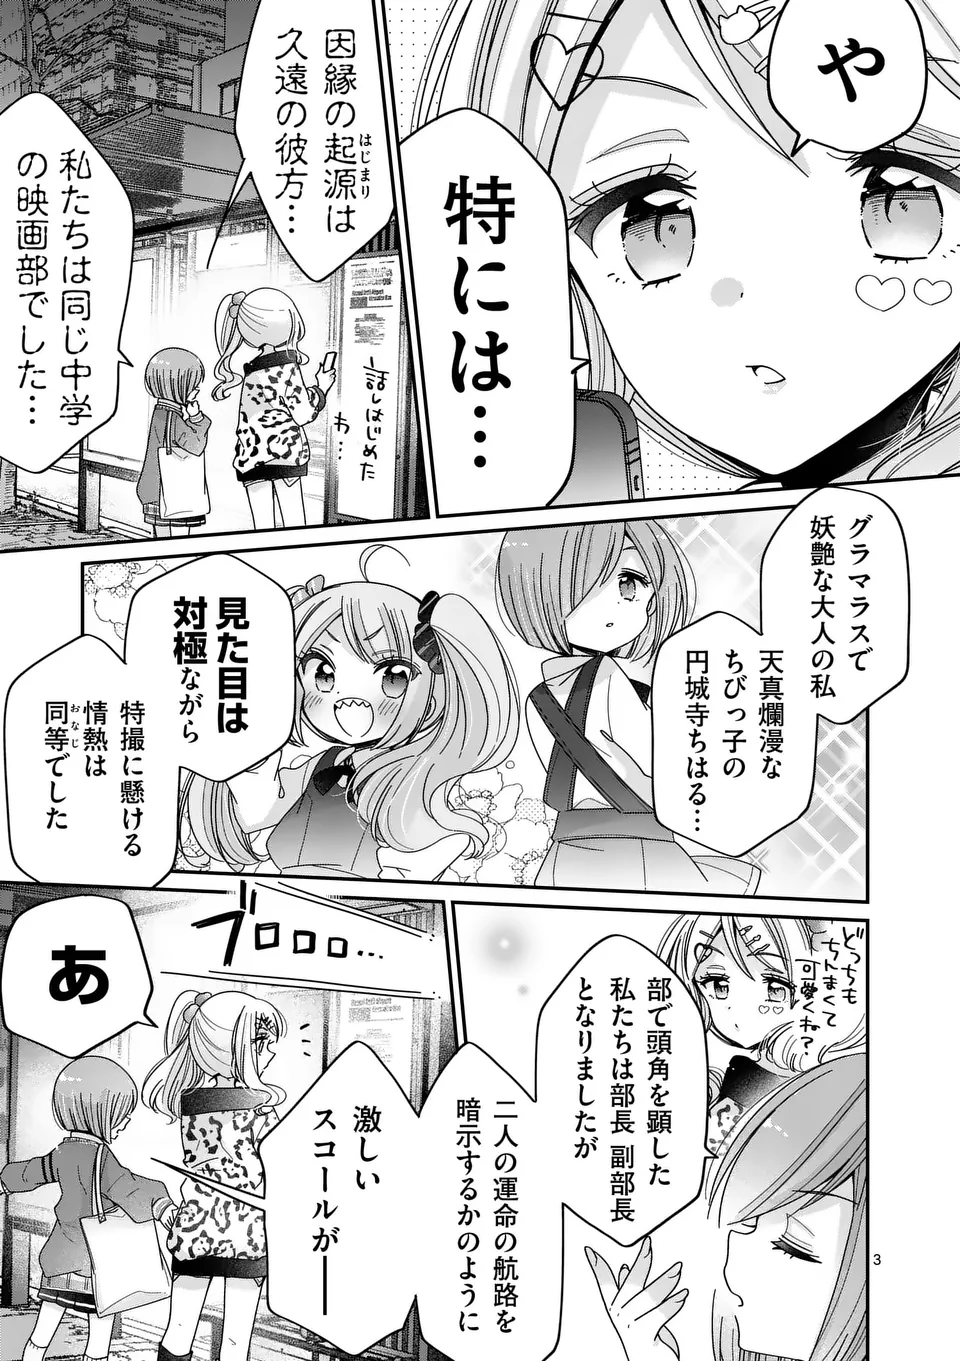 Kimi Toku!! – Kimi ni mo Tokusatsu Eiga ga Toreru!! - Chapter 26 - Page 3